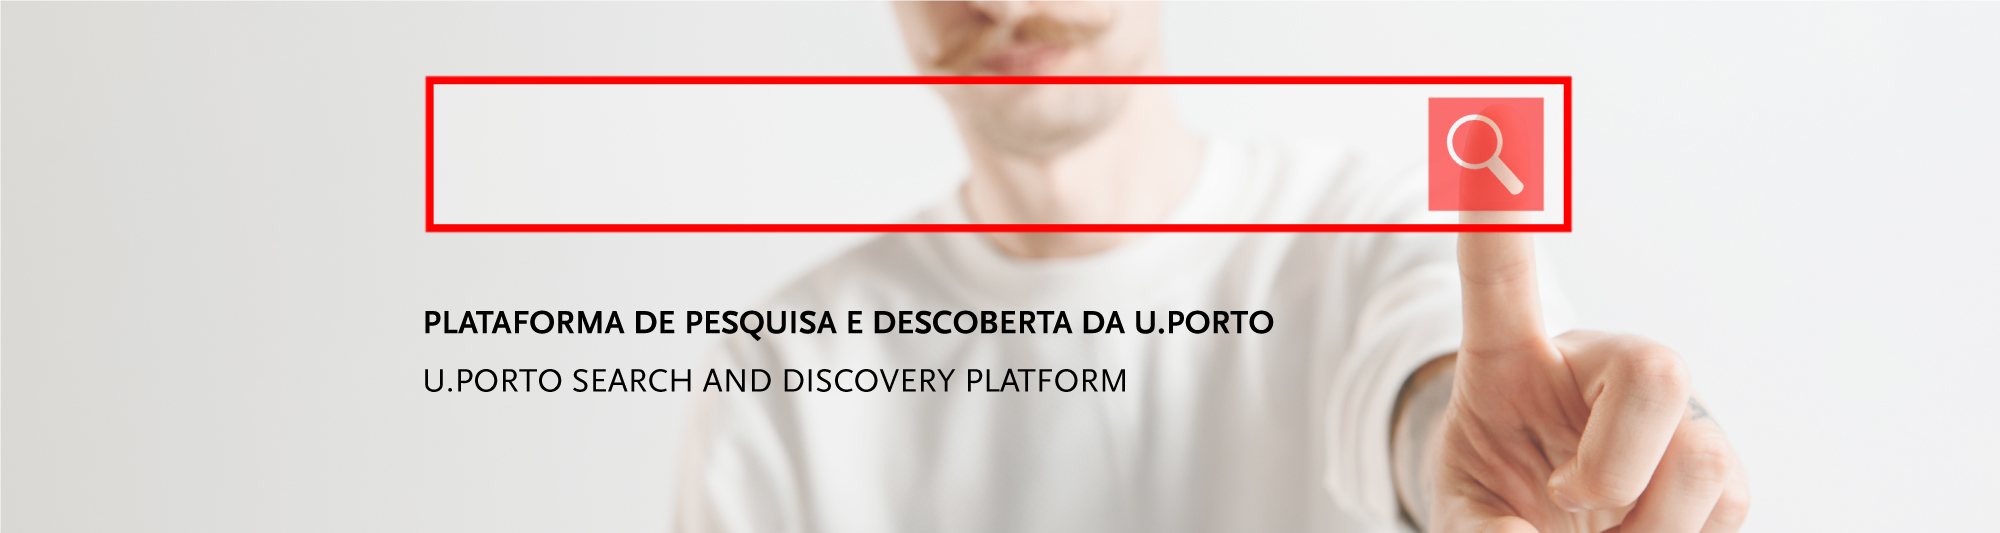 Plataforma de pesquisa e descoberta da U.Porto